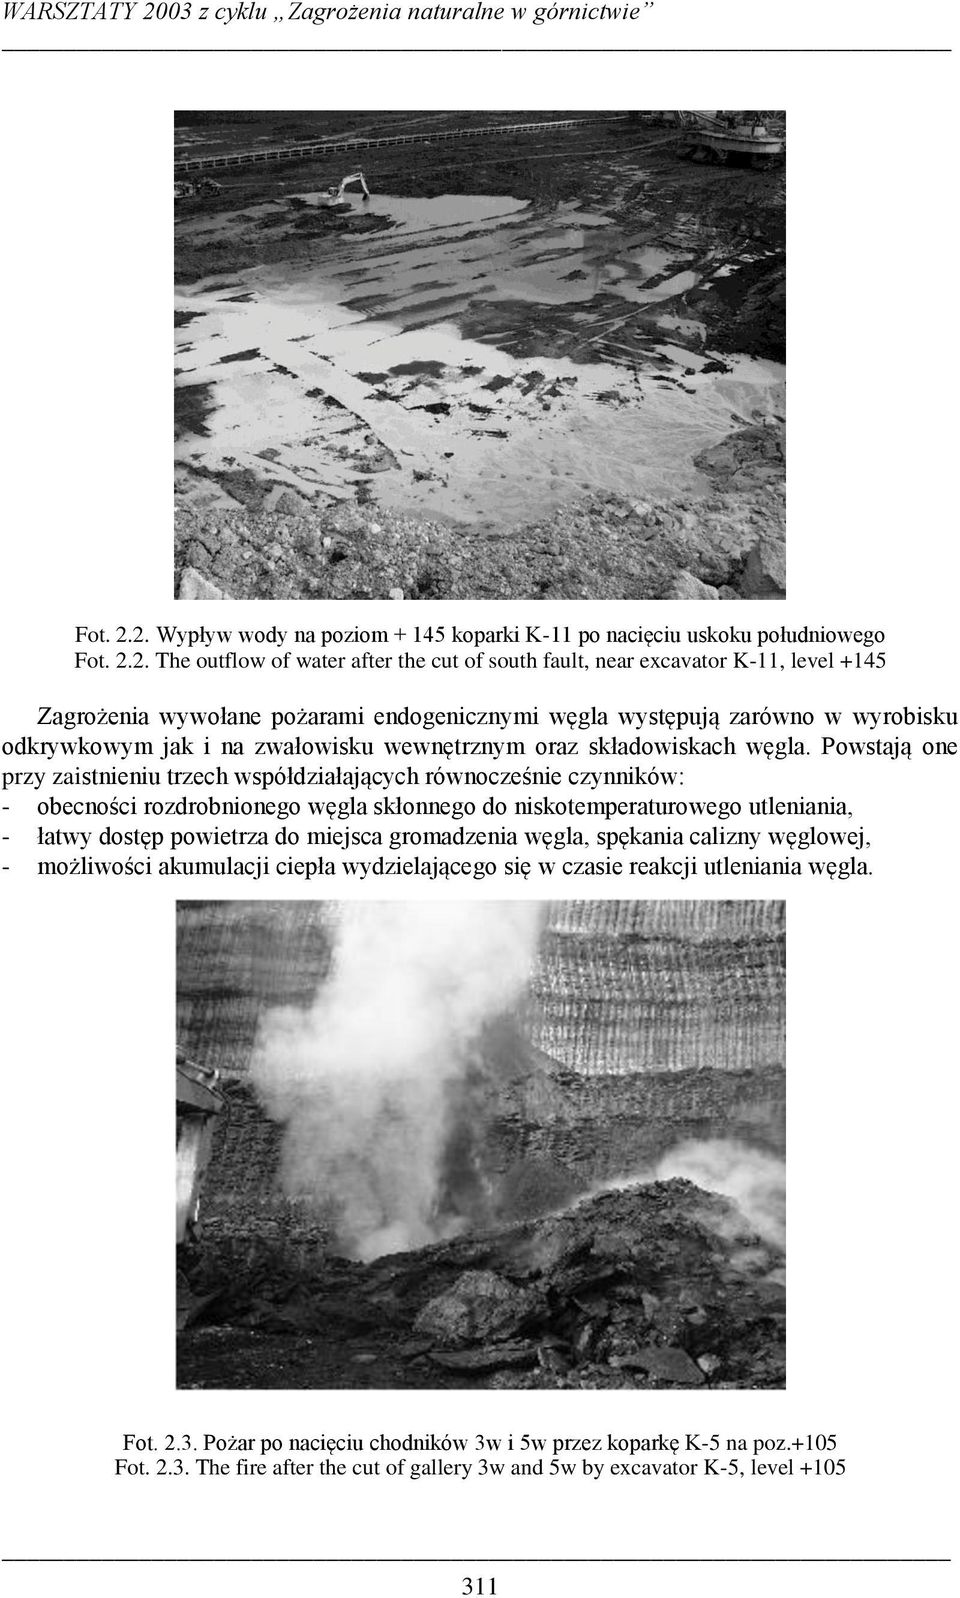 The outflow of water after the cut of south fault, near excavator K-11, level +145 Zagrożenia wywołane pożarami endogenicznymi węgla występują zarówno w wyrobisku odkrywkowym jak i na zwałowisku